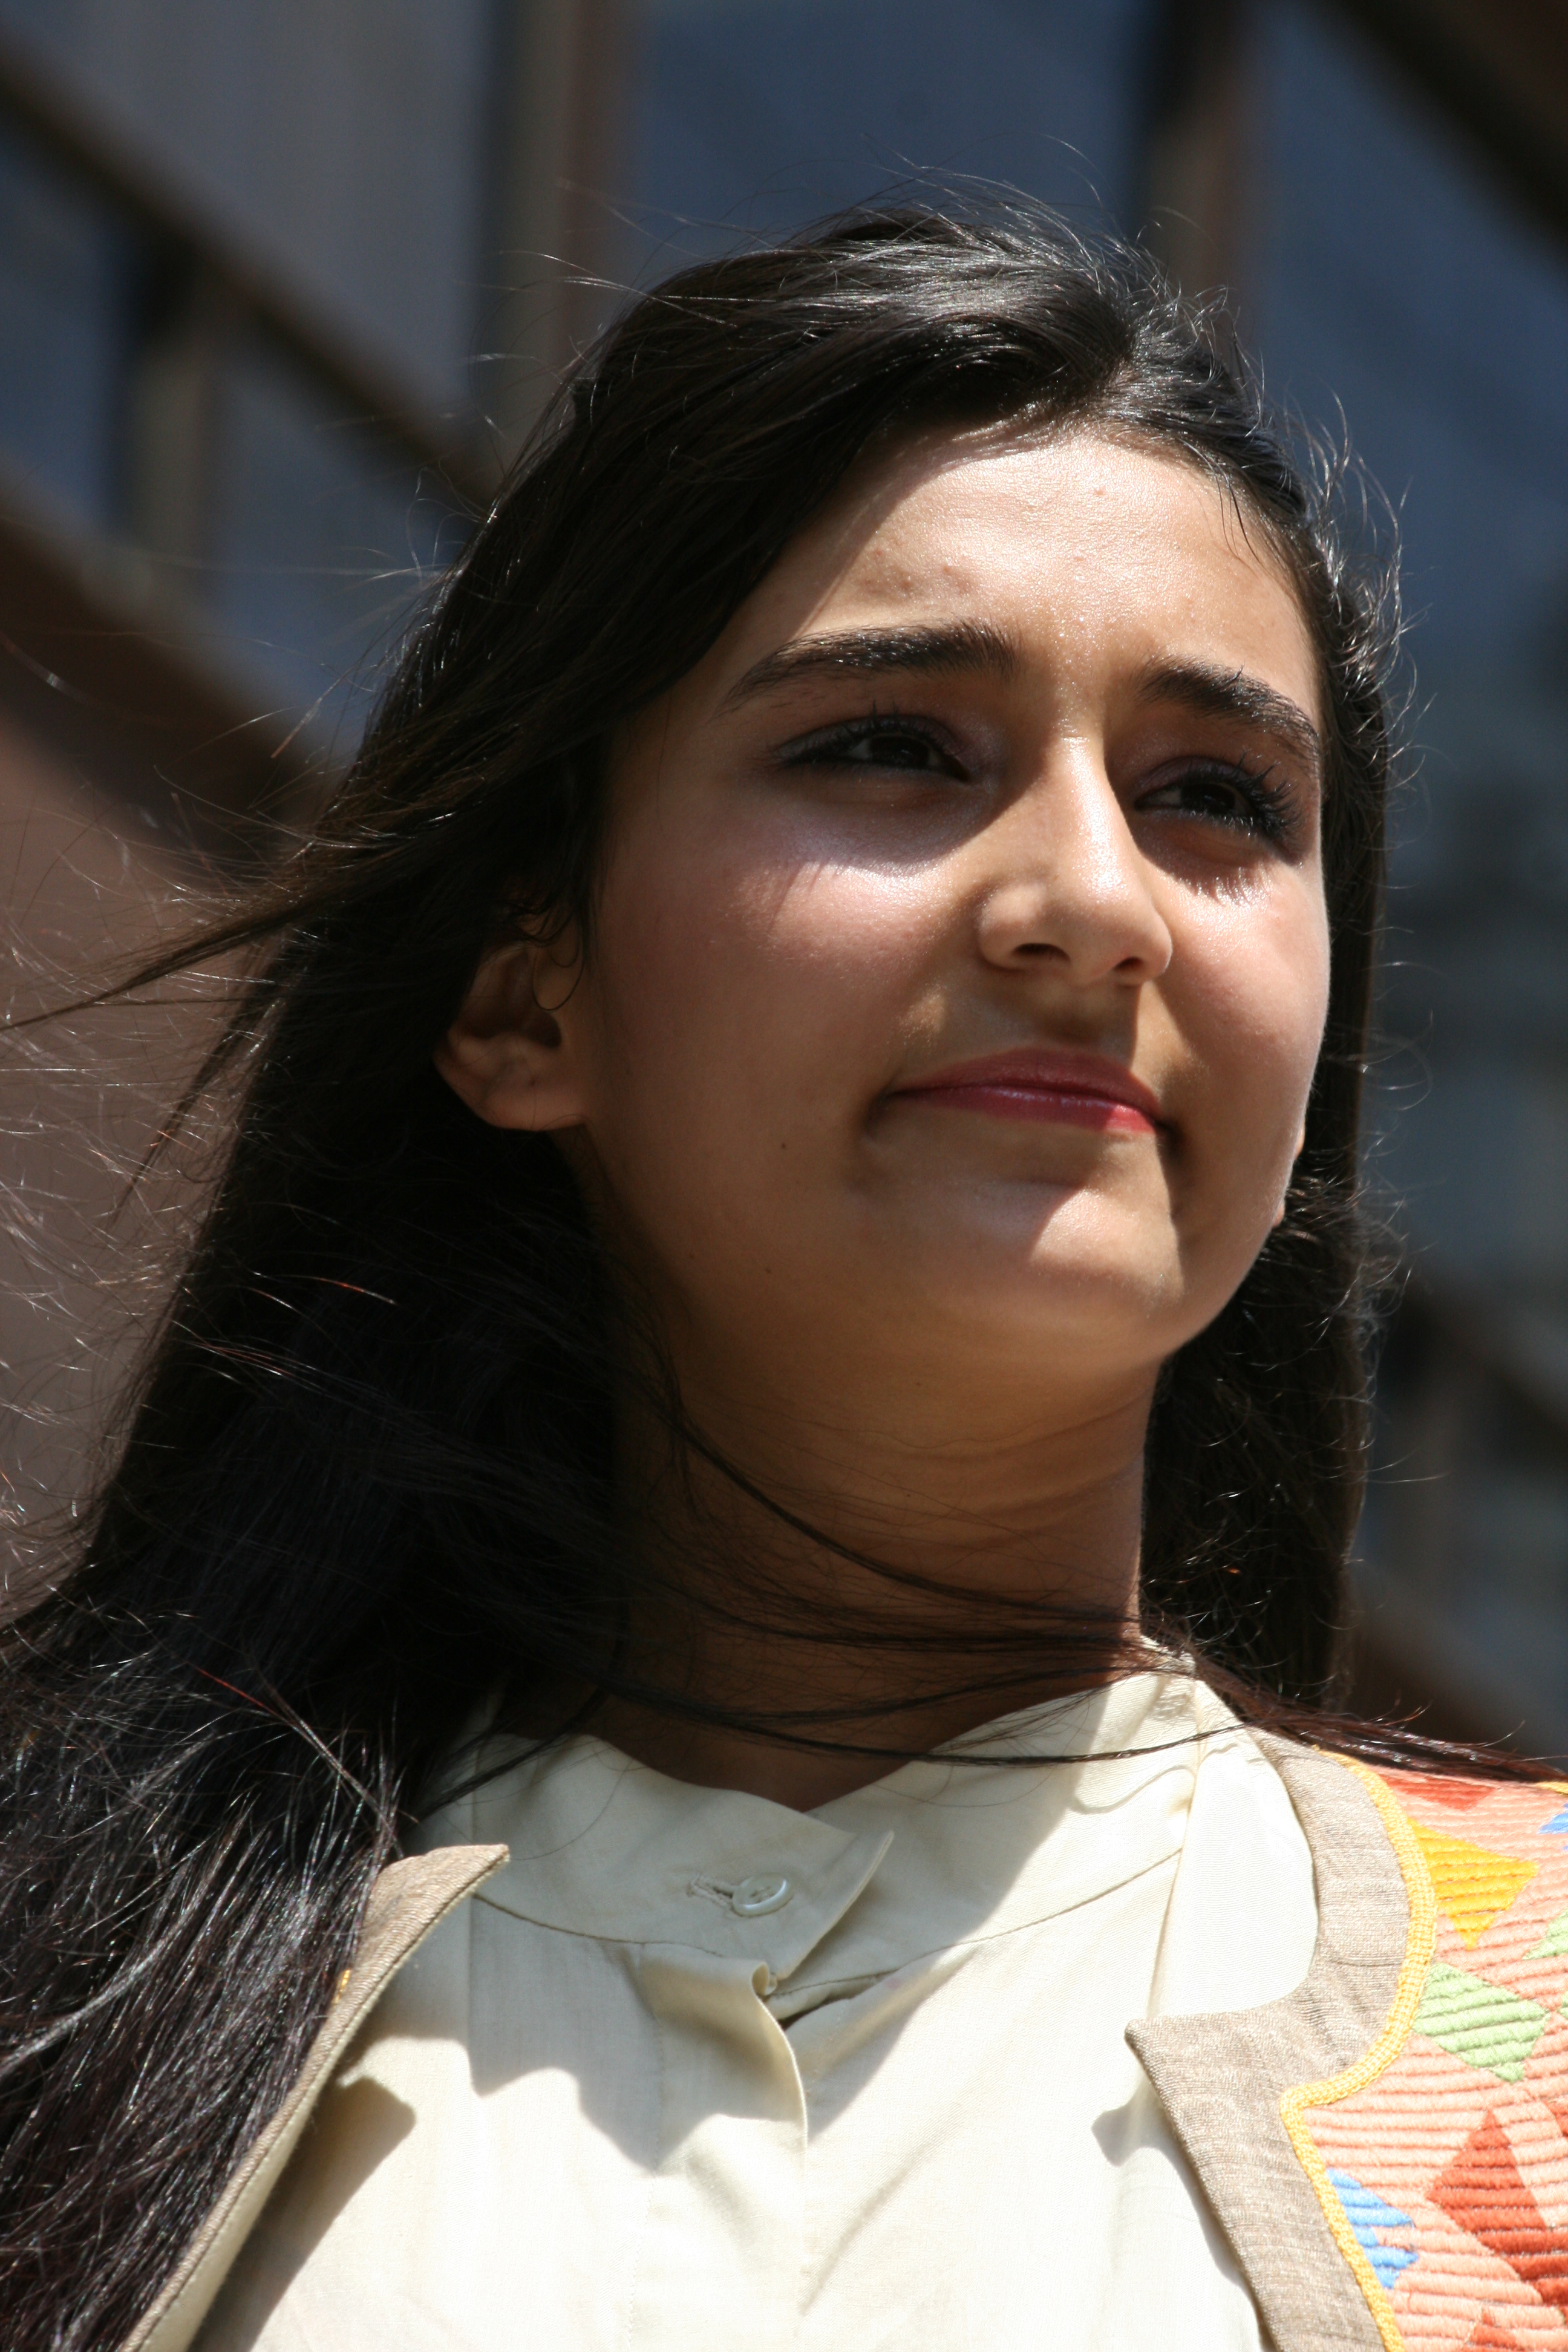 Turkish girl in white costume